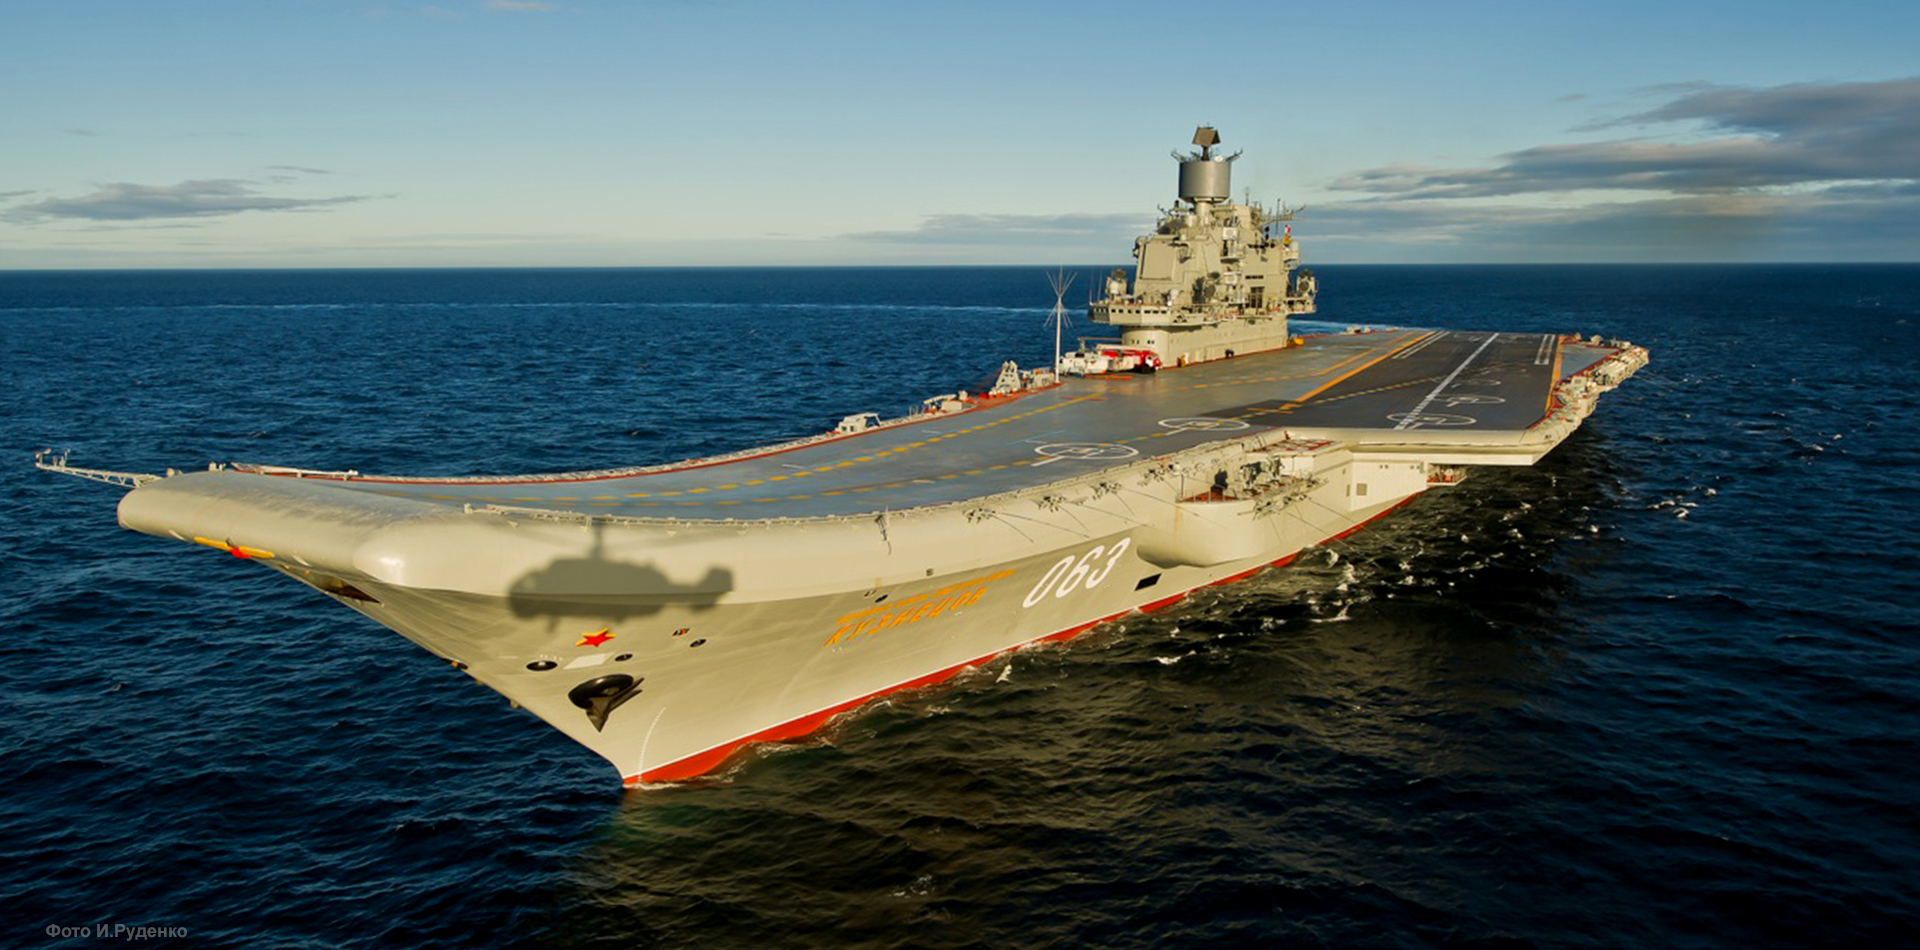 L'unique porte-avions russe Amiral Kuznetsov a pris feu à Mourmansk - il est en réparation depuis 2018.